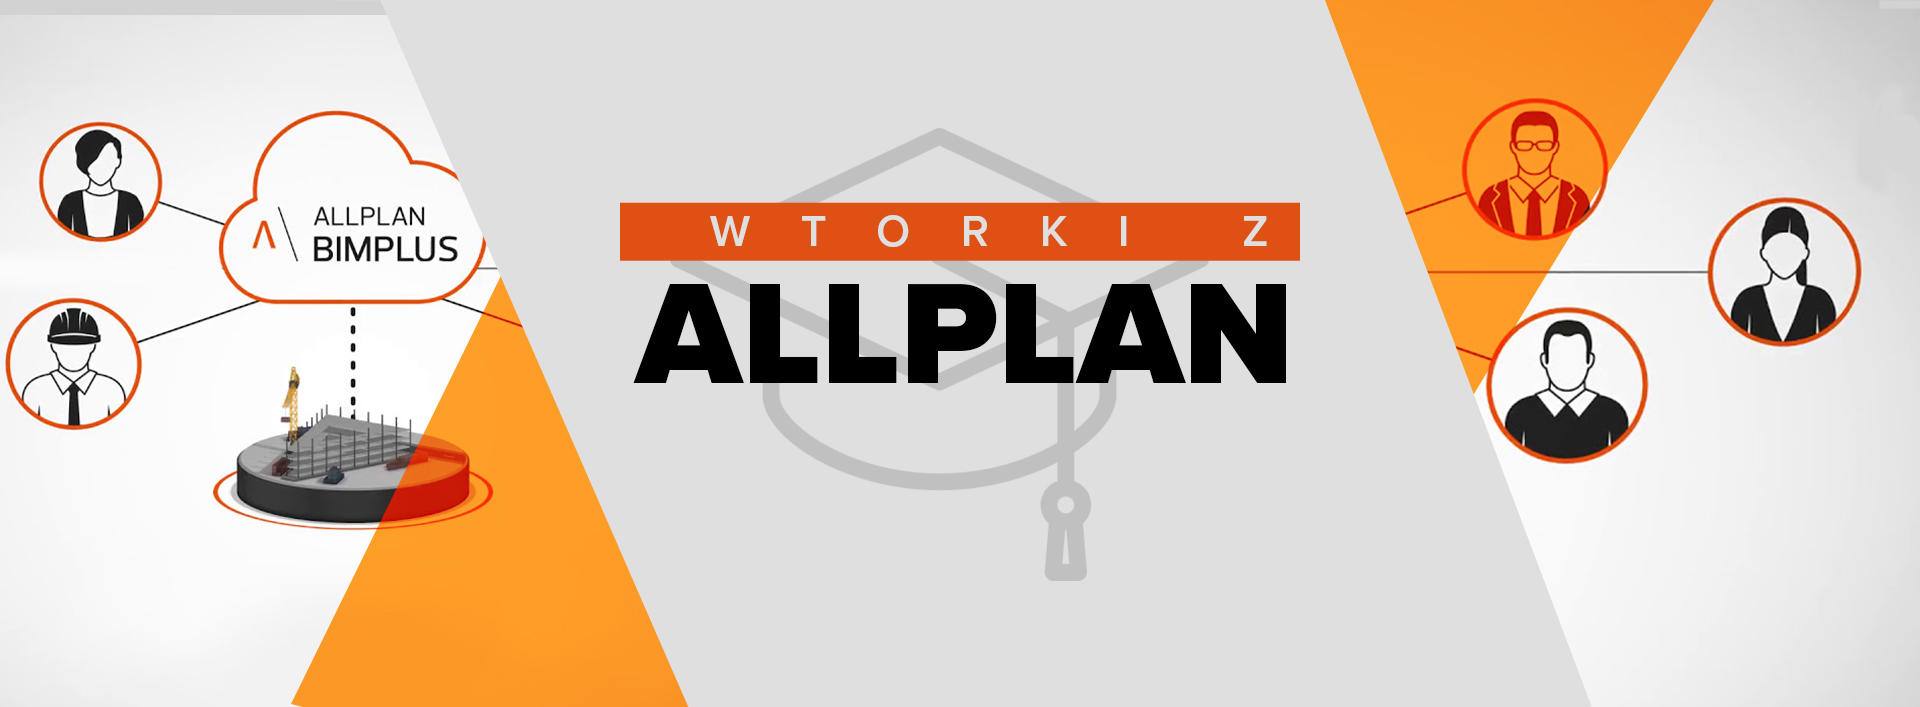 Wtorki z Allplan:  Bimplus i zarządzanie projektem